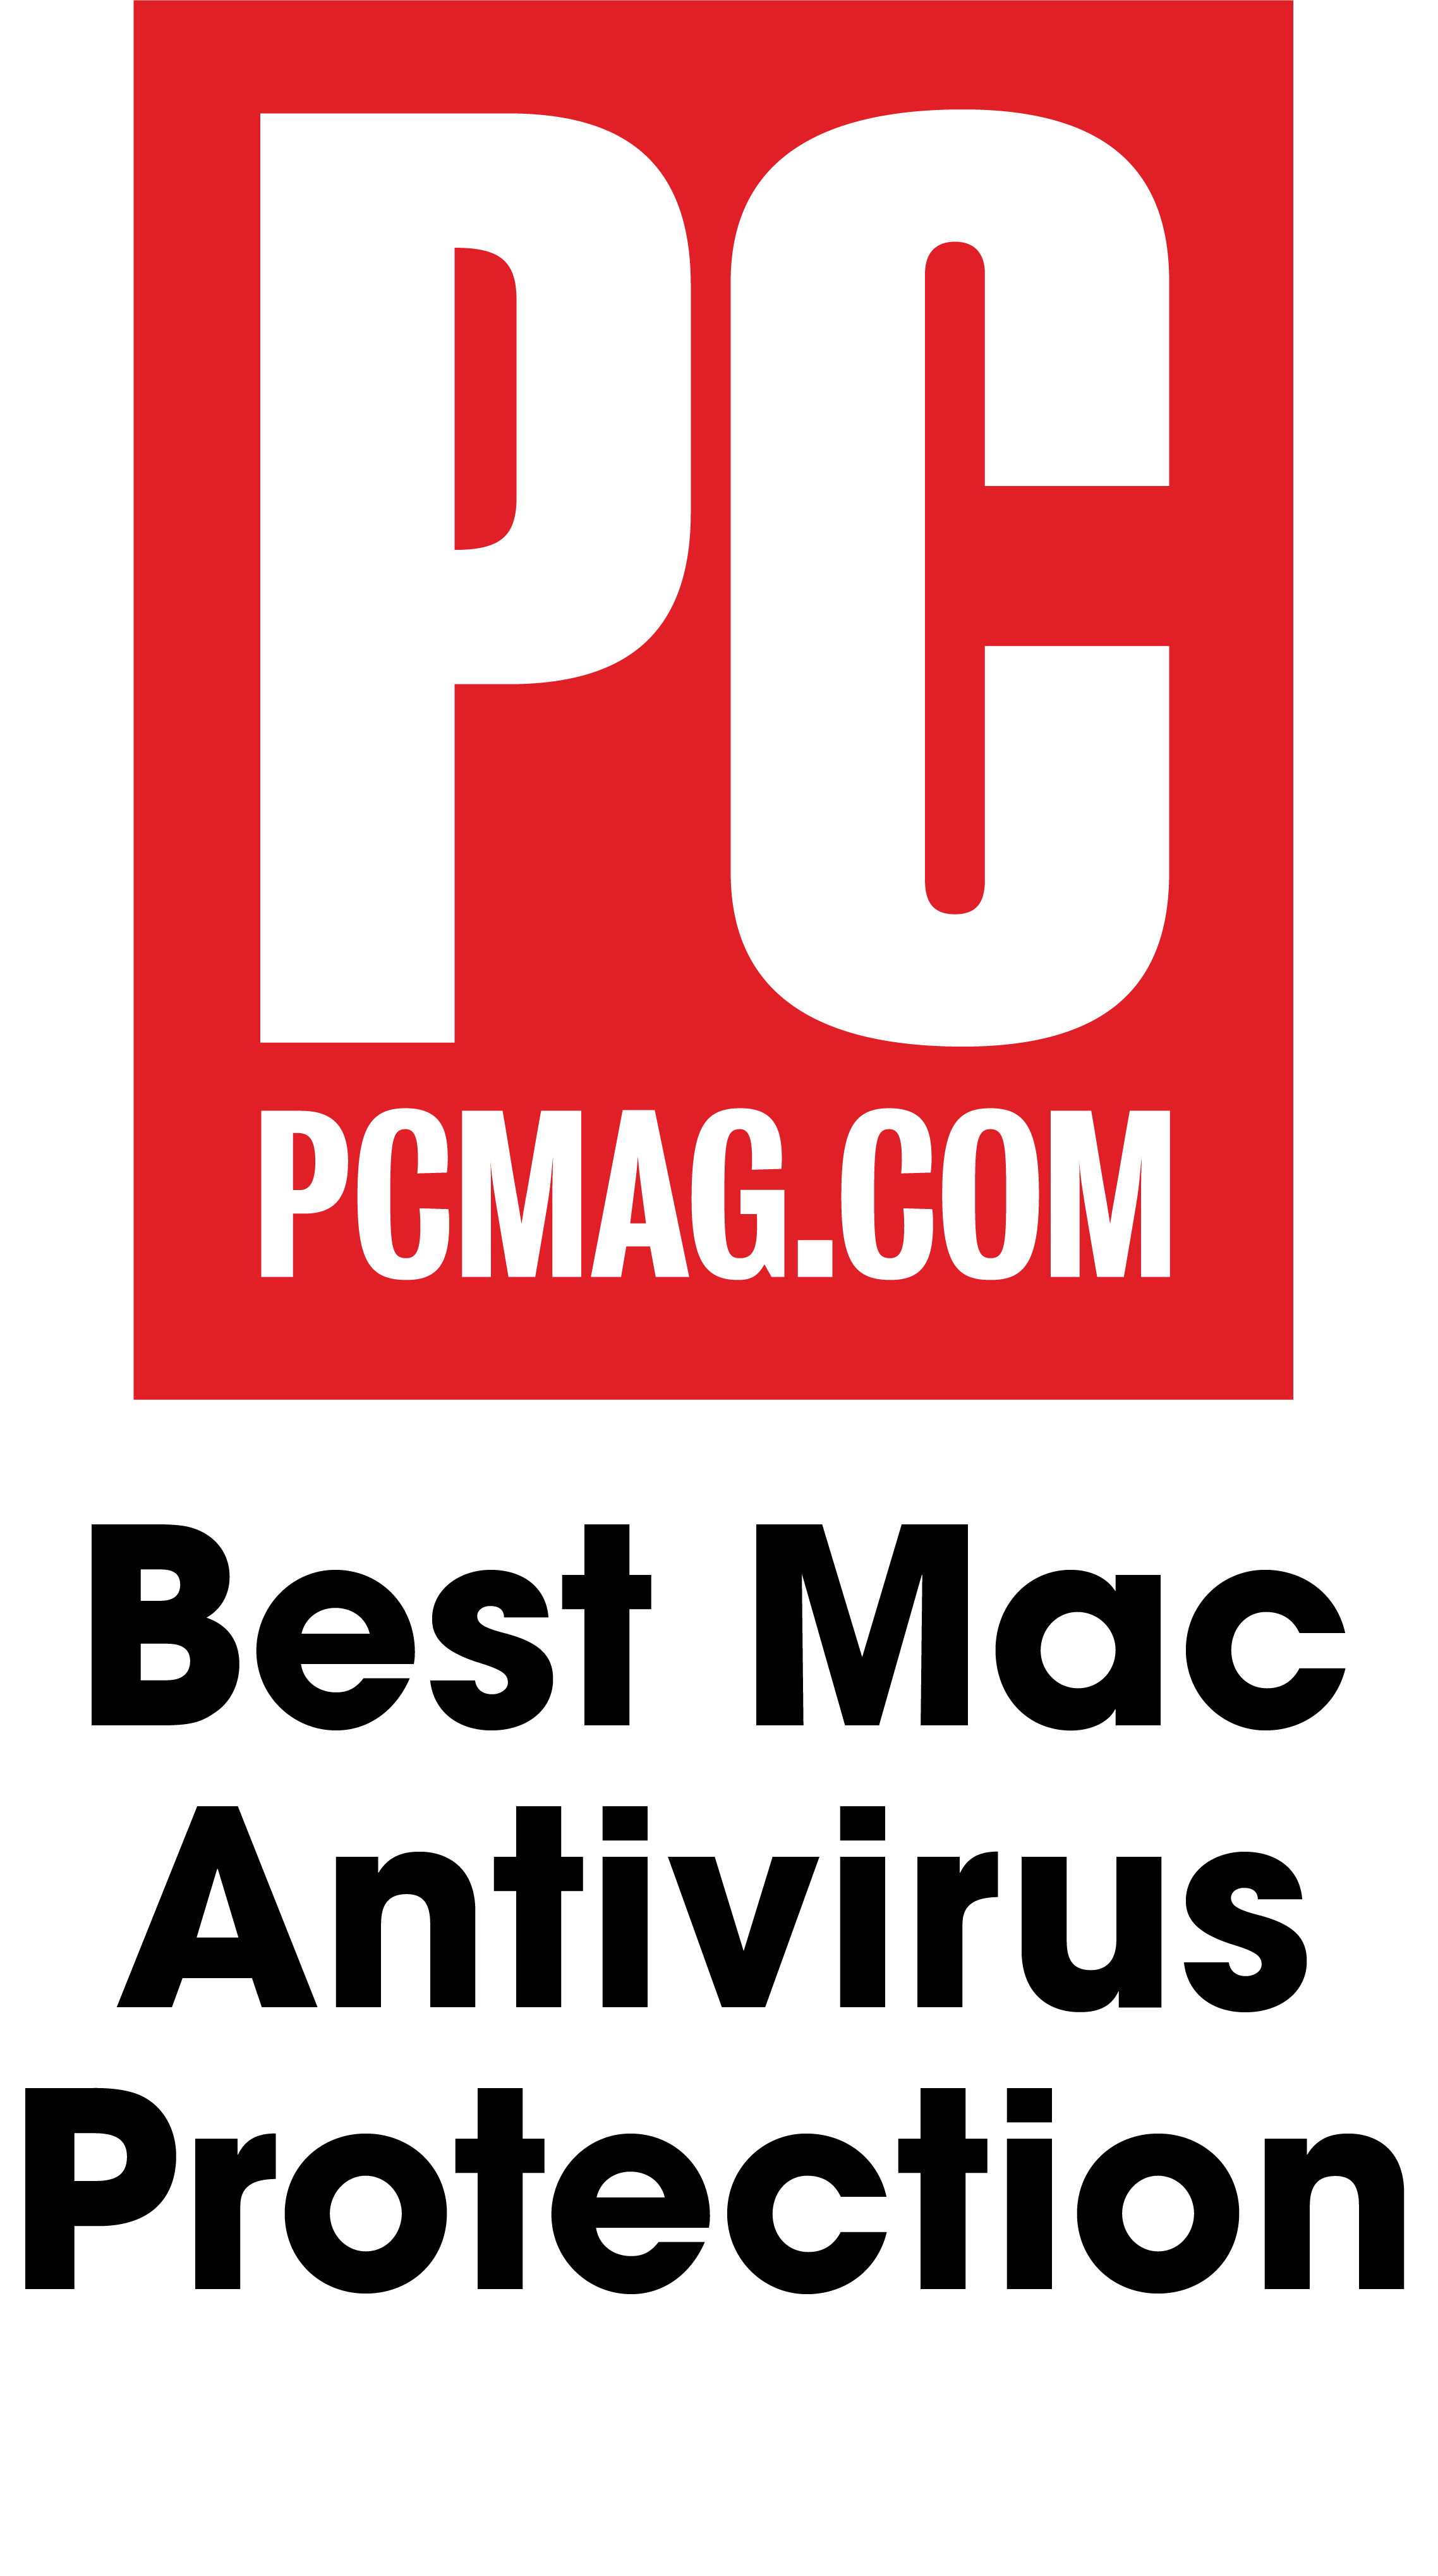 Best Mac Antivirus